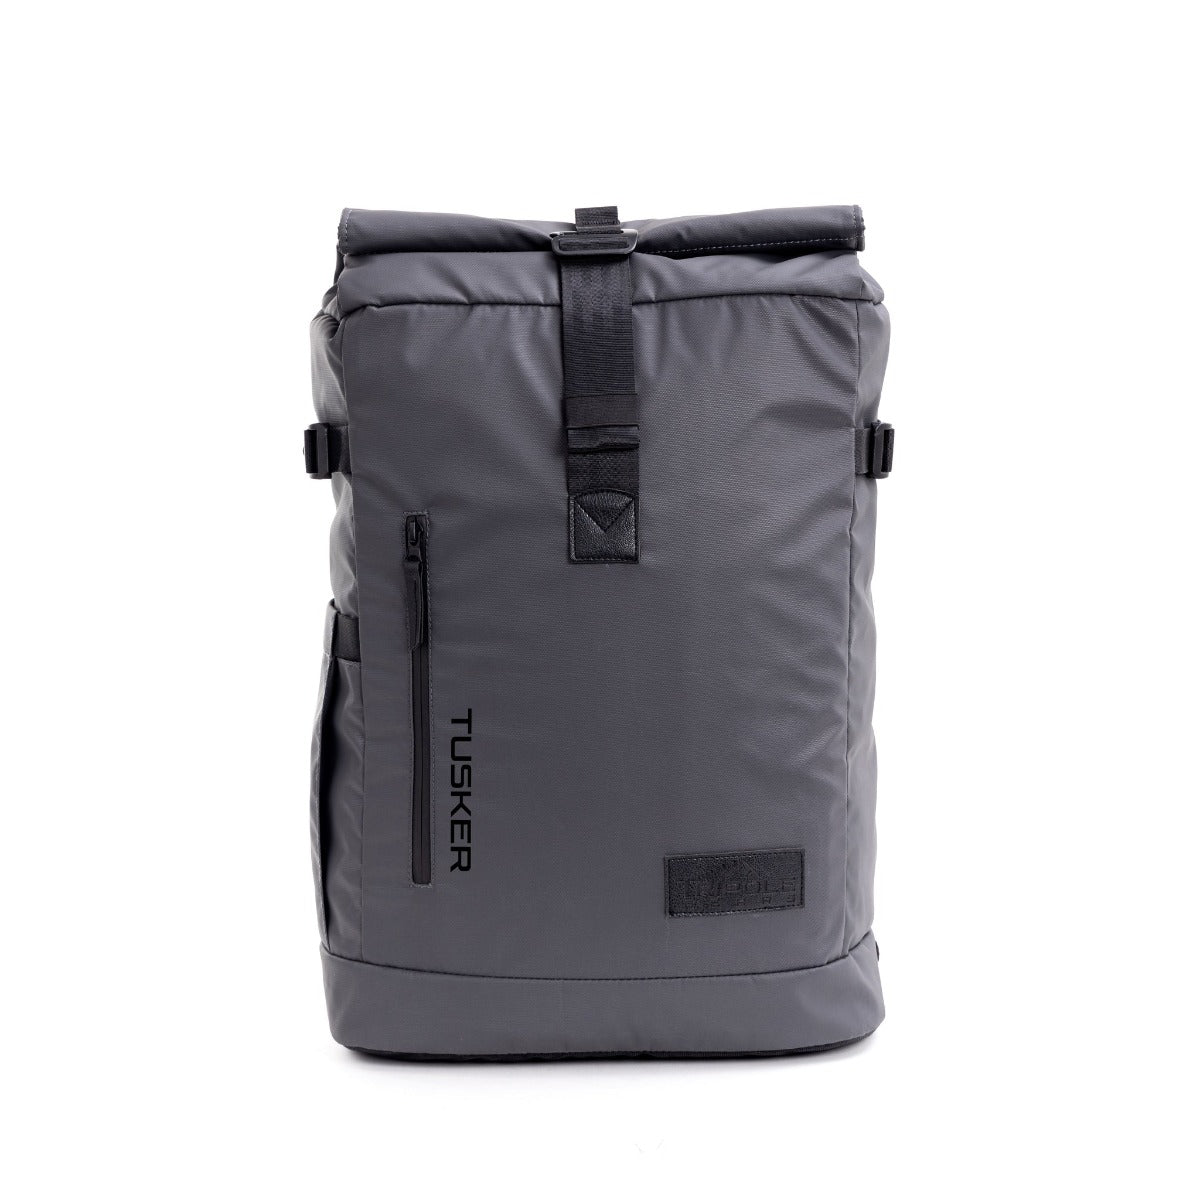 Tusker Roller Top Laptop Backpack - 35 Litre 5